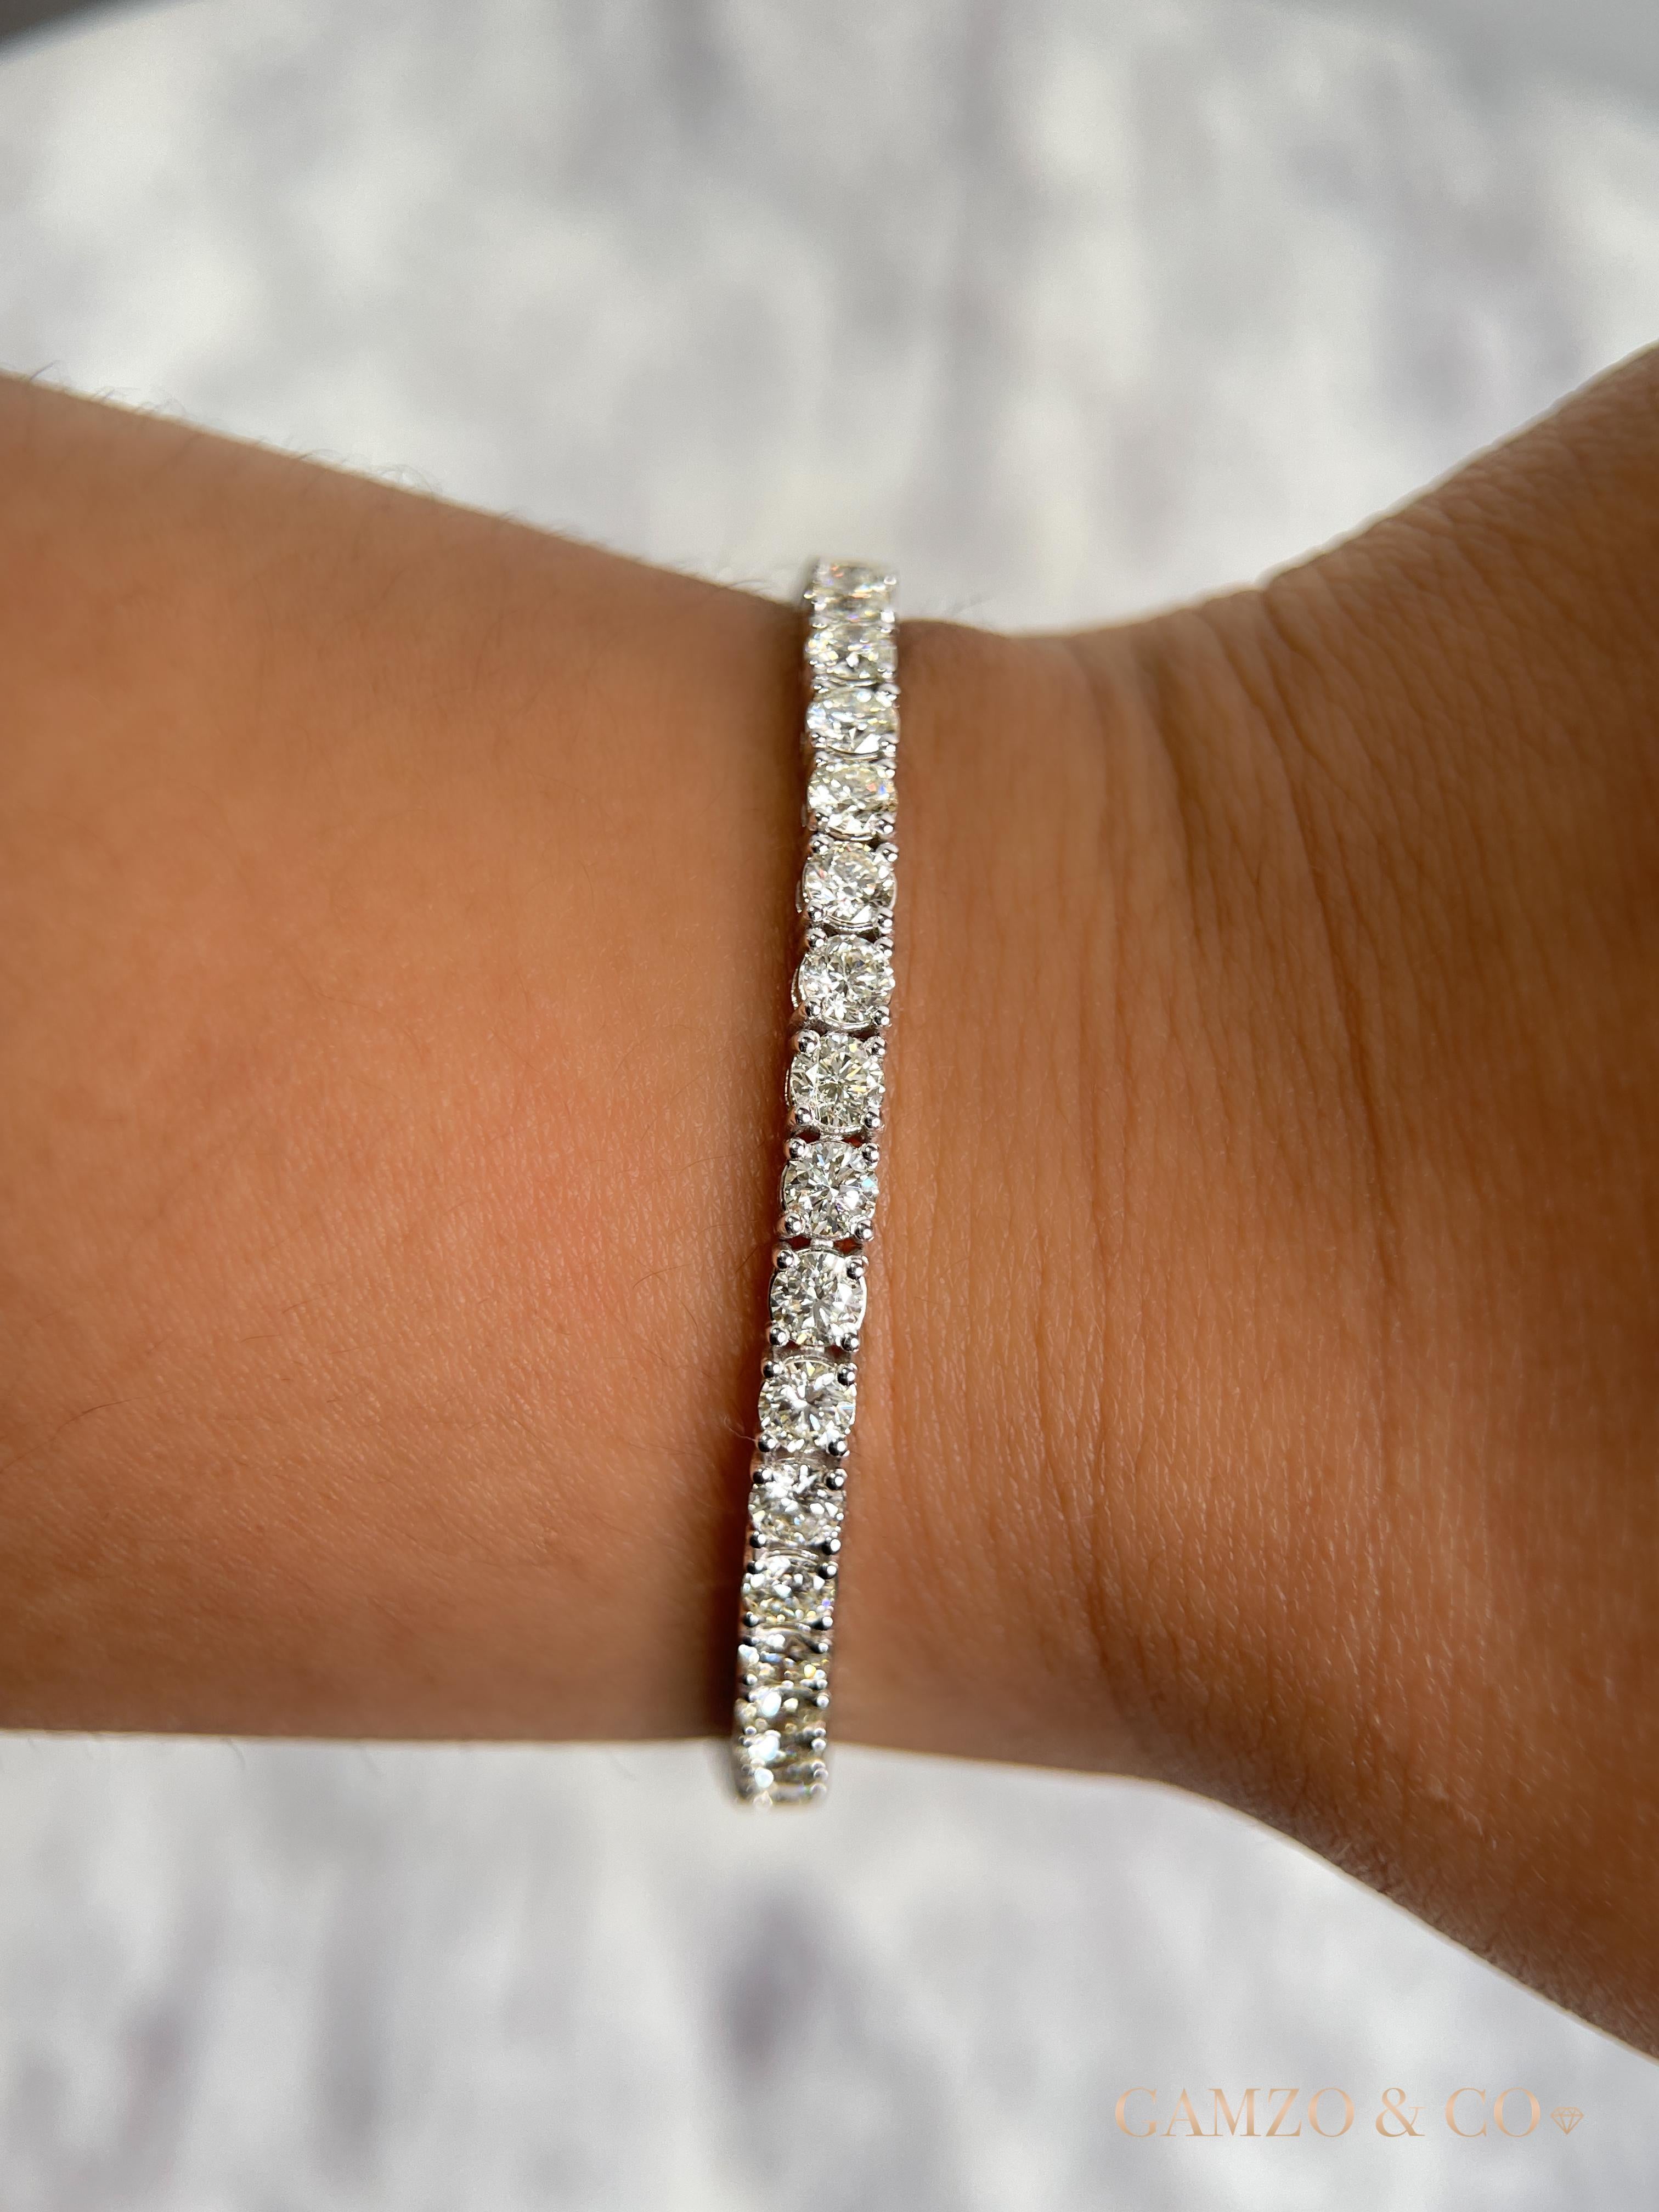 Ce bracelet tennis en diamants présente des diamants ronds magnifiquement taillés et sertis dans de l'or 14k.

Métal : Or 14k
Coupe du diamant : Diamant naturel rond 
Nombre total de carats de diamants : 9ct
Clarté du diamant : VS
Couleur du diamant